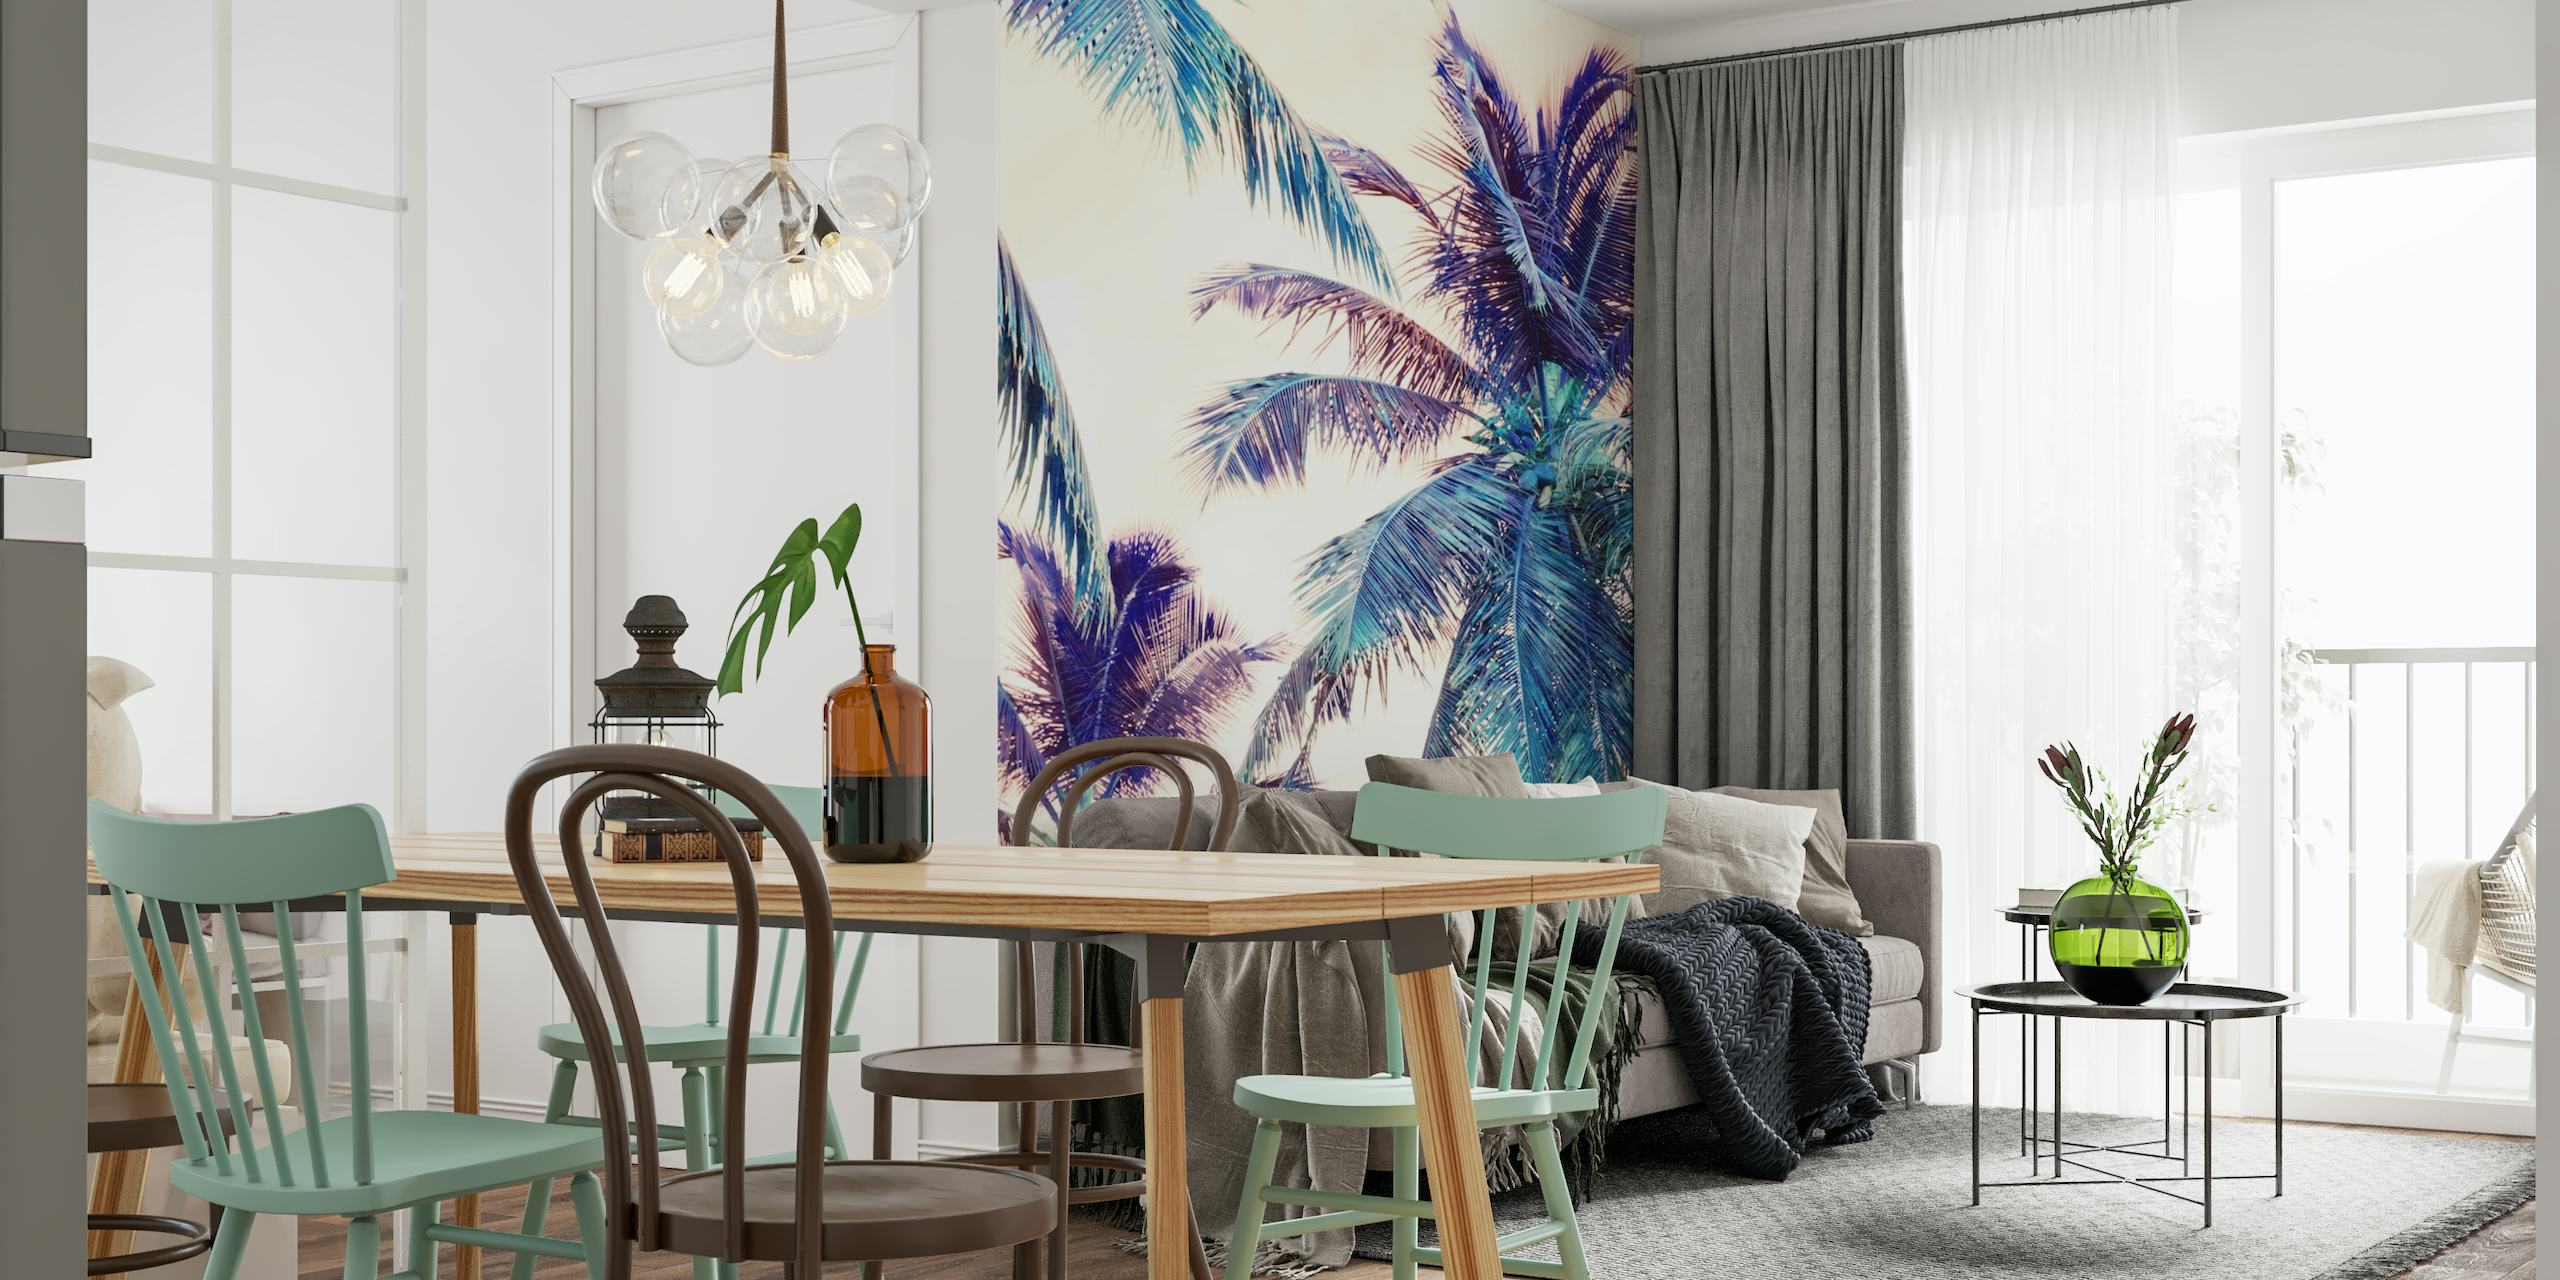 Muurschildering van palmbomen met zomerse strandvibes